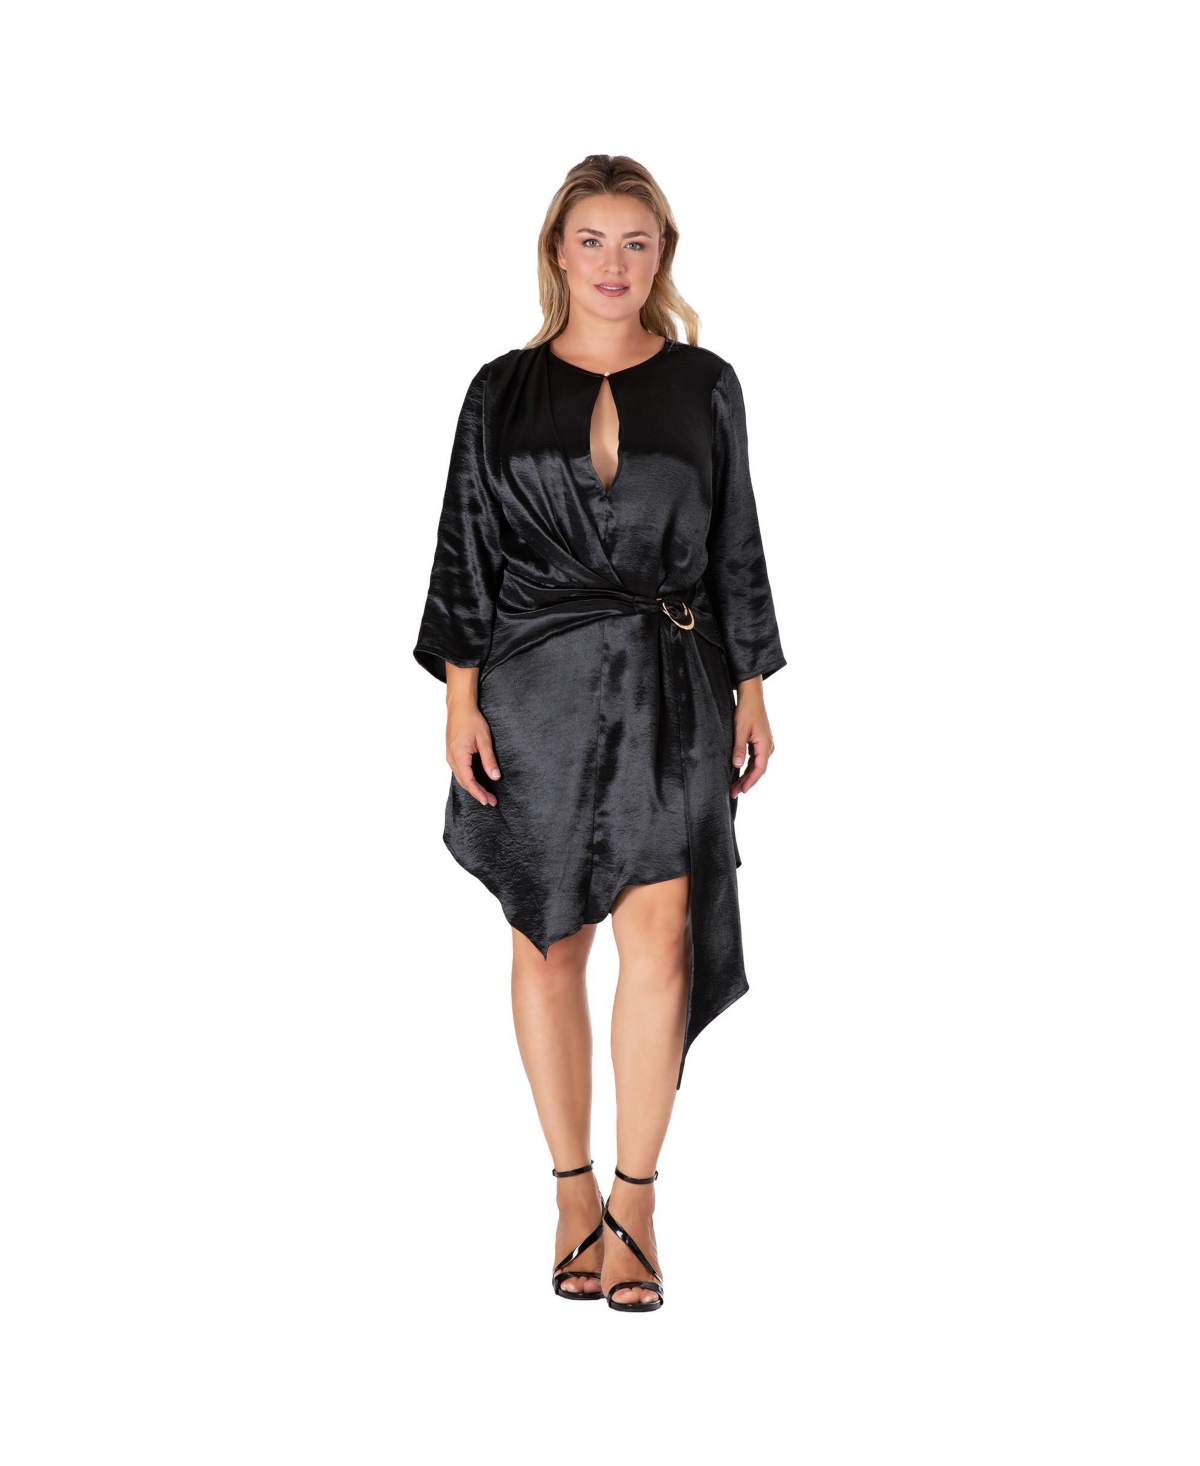 Women's Plus Size Long Sleeves Black Satin Mini Dress - Black